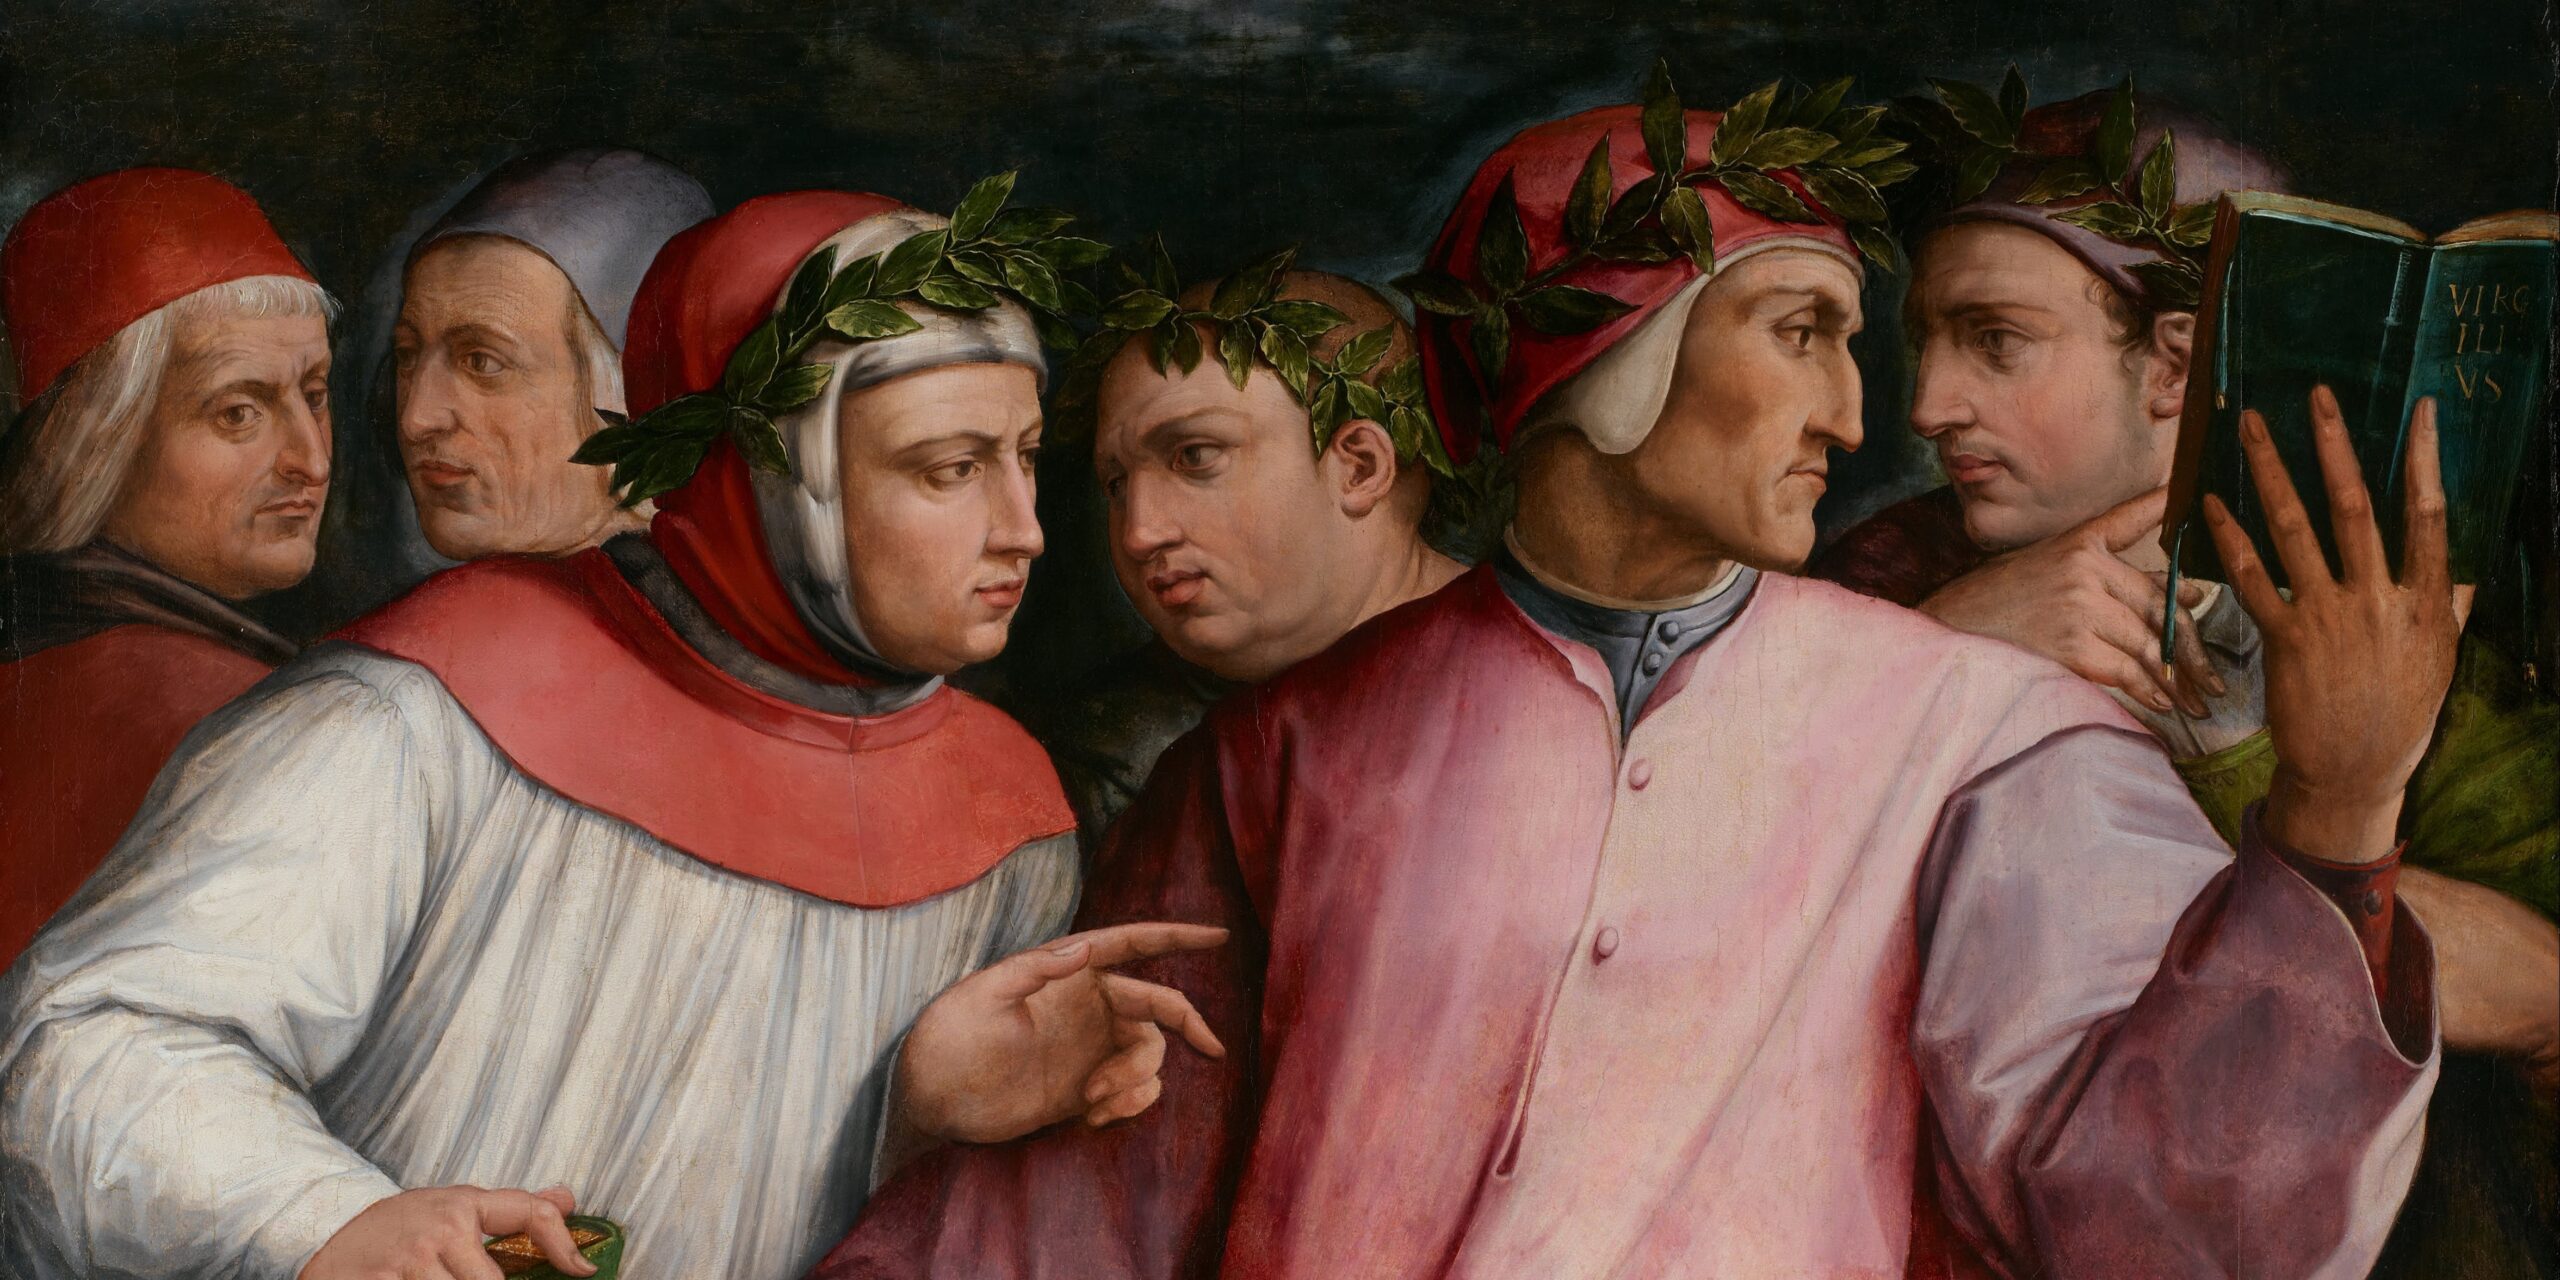 Dipinto di Giorgio Vasari raffigurante, da sinistra verso destra, i poeti toscani Cristoforo Landino, Marsilio Ficino, Francesco Petrarca, Giovanni Boccaccio, Dante Alighieri e Guido Cavalcanti